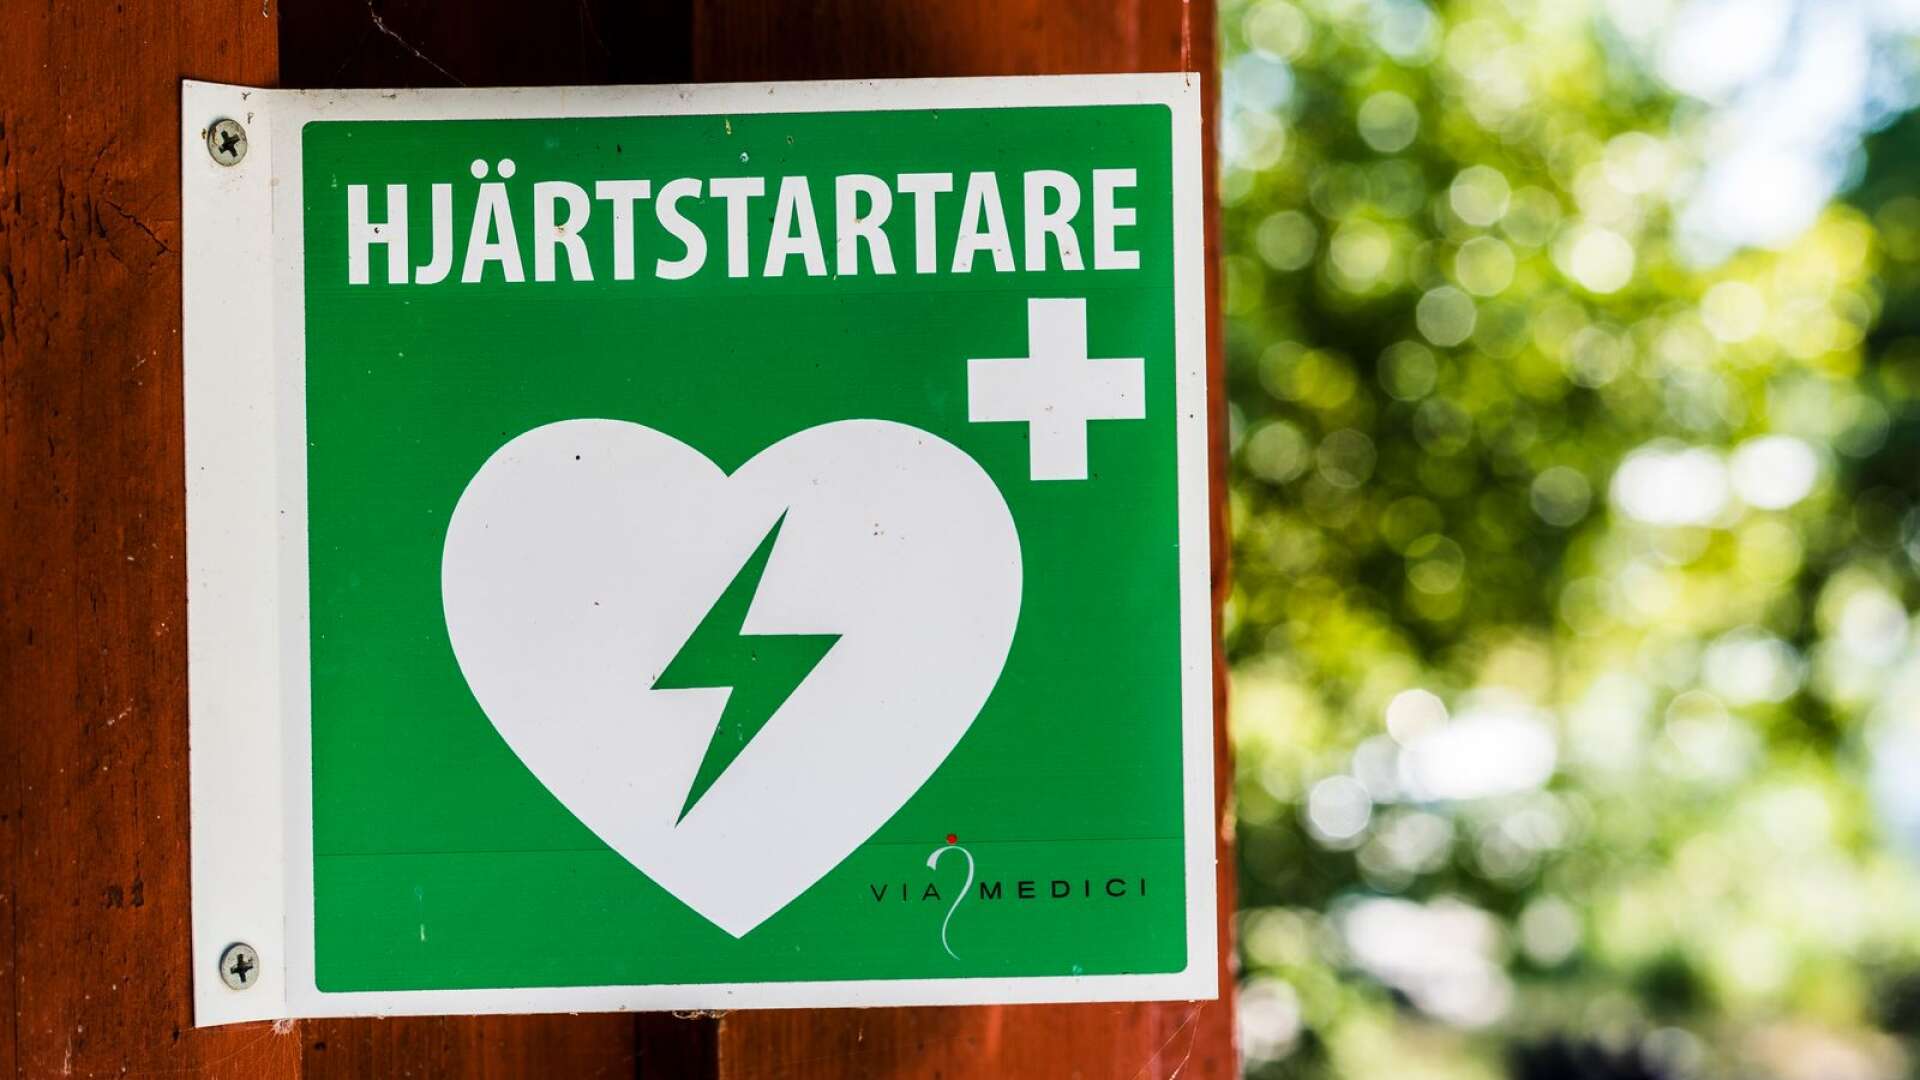 För långa utryckningstider för ambulanserna och för få hjärtstartare kan förklara den höga dödligheten vid plötsligt hjärtstopp i Värmland, menar debattörerna. 